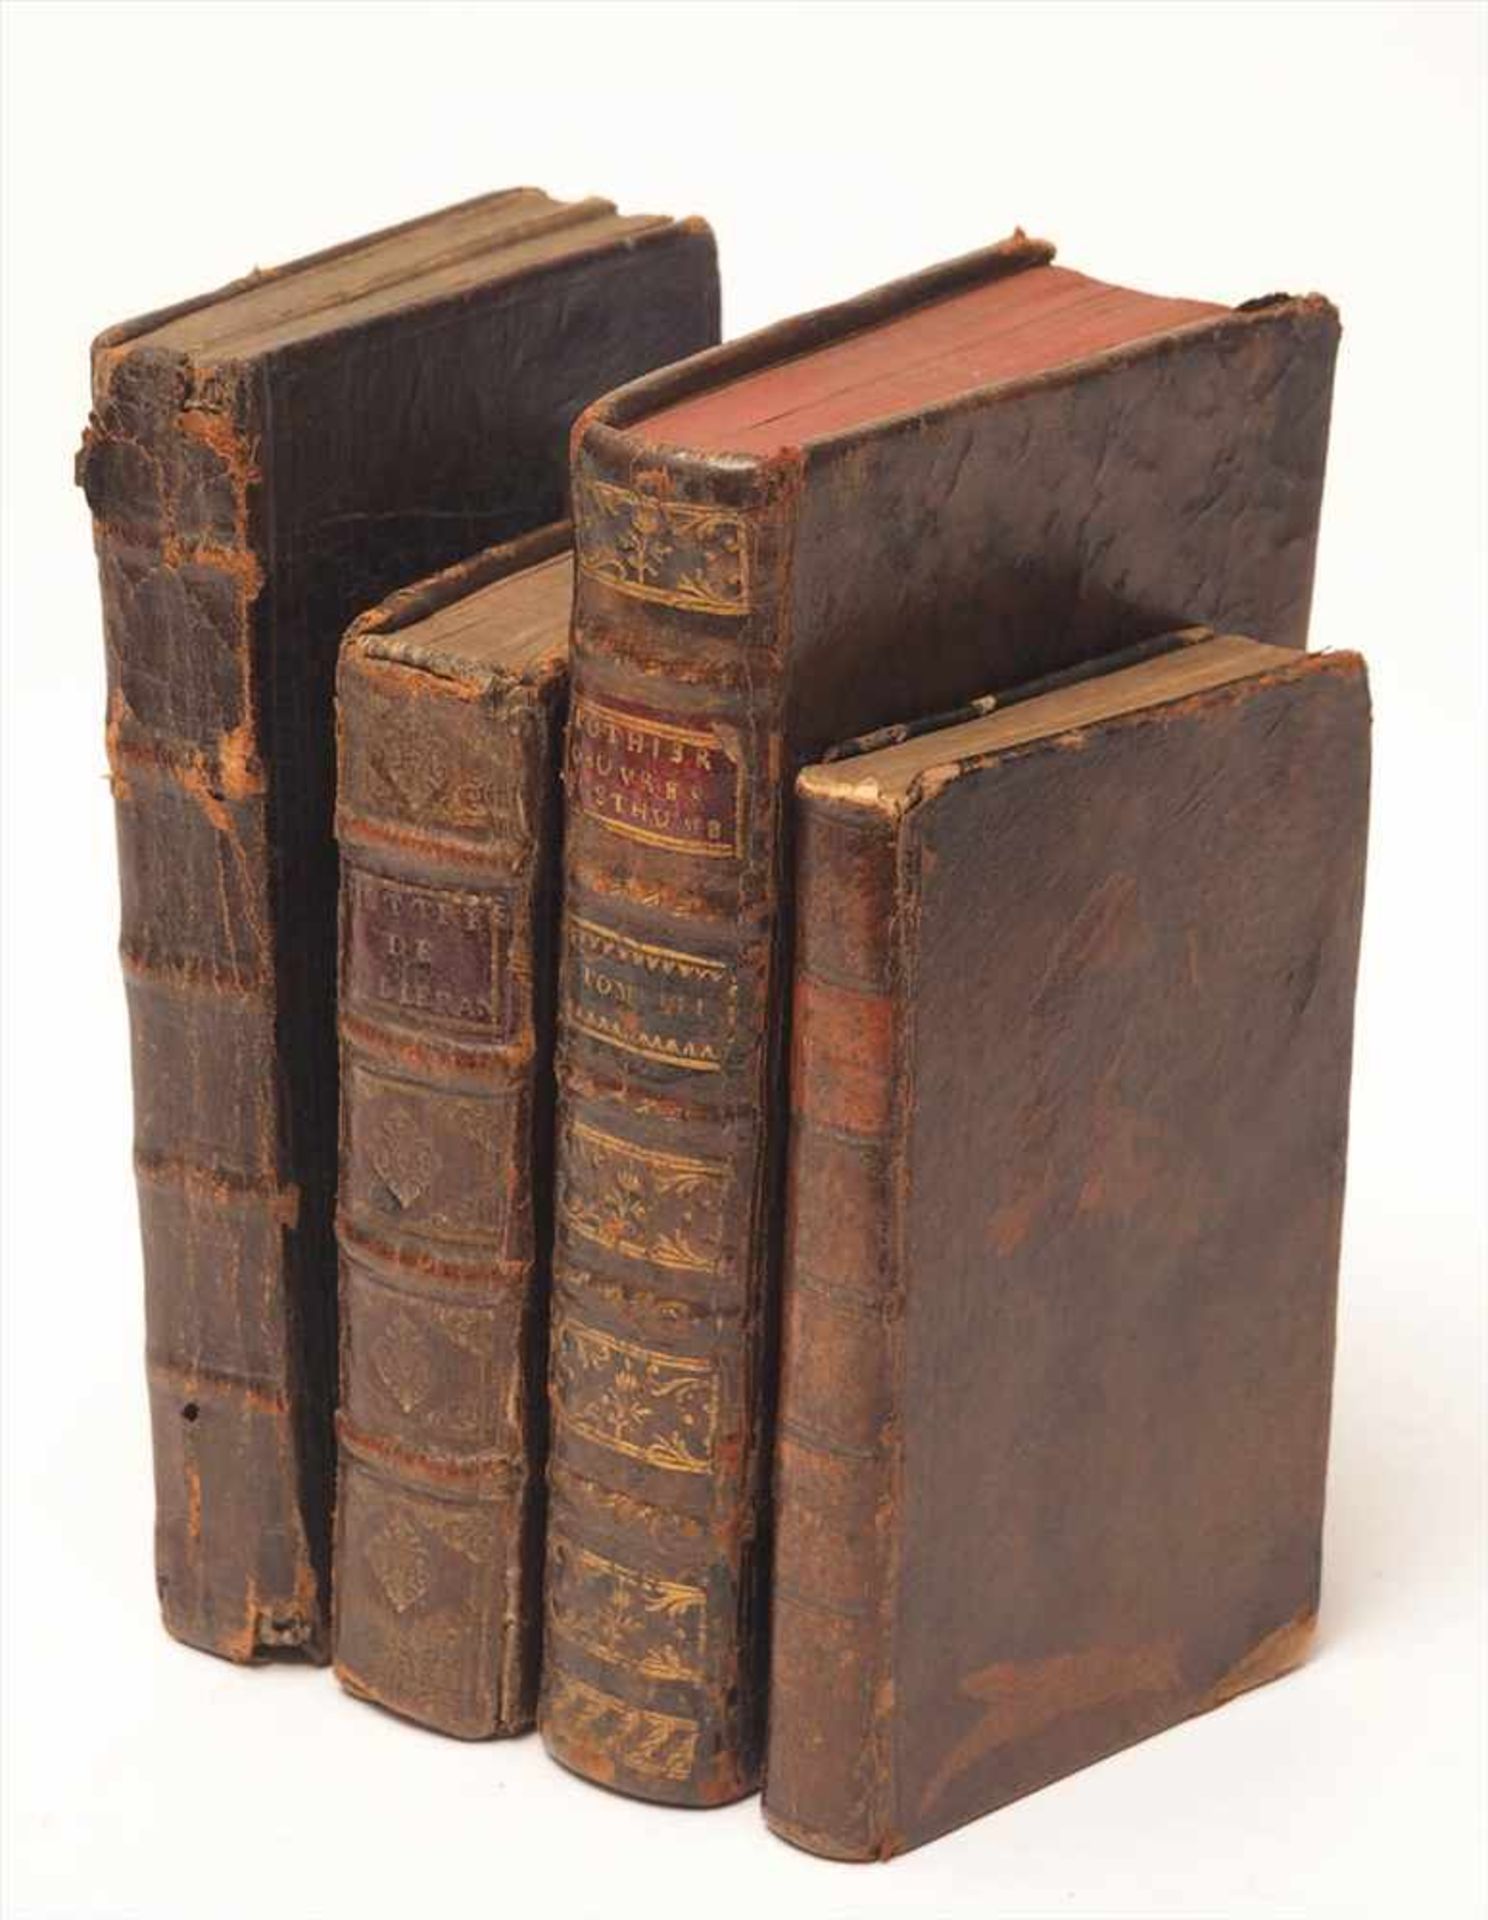 Vier div. Bücher, Frankreich, 18.Jhdt.Lettres familières de René Milleran; Pensées de M. le comte